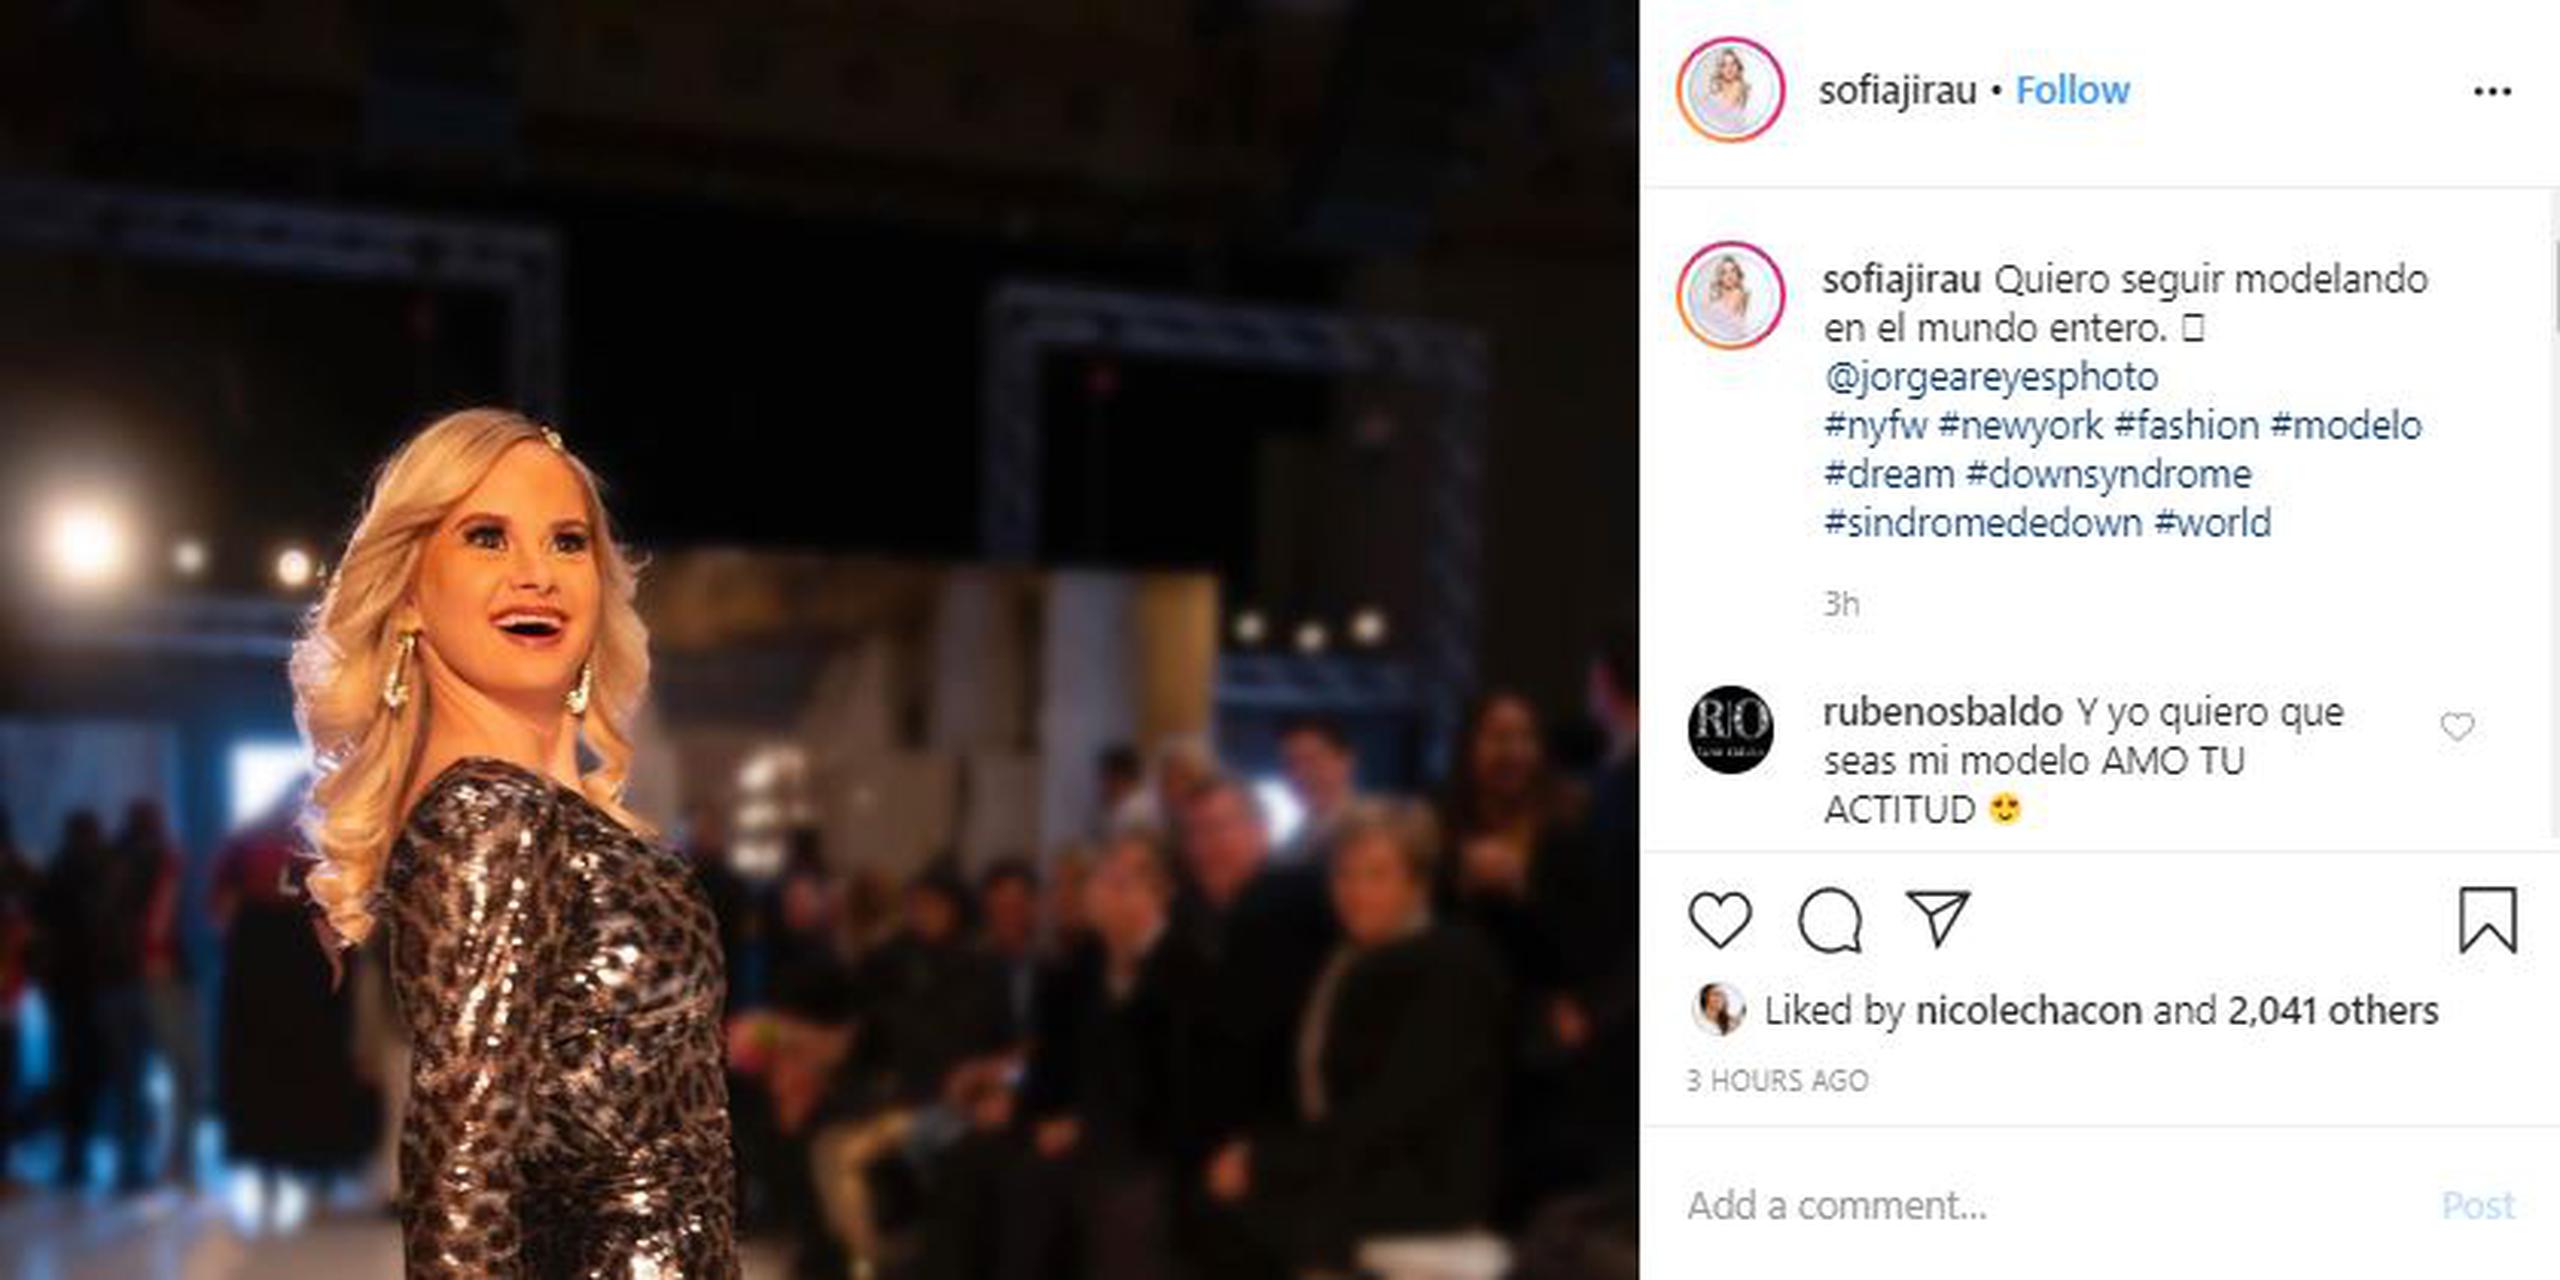 En febrero pasado, Sofía Jirau cumplió su sueño de desfilar en las pasarelas del "New York Fashion Week".